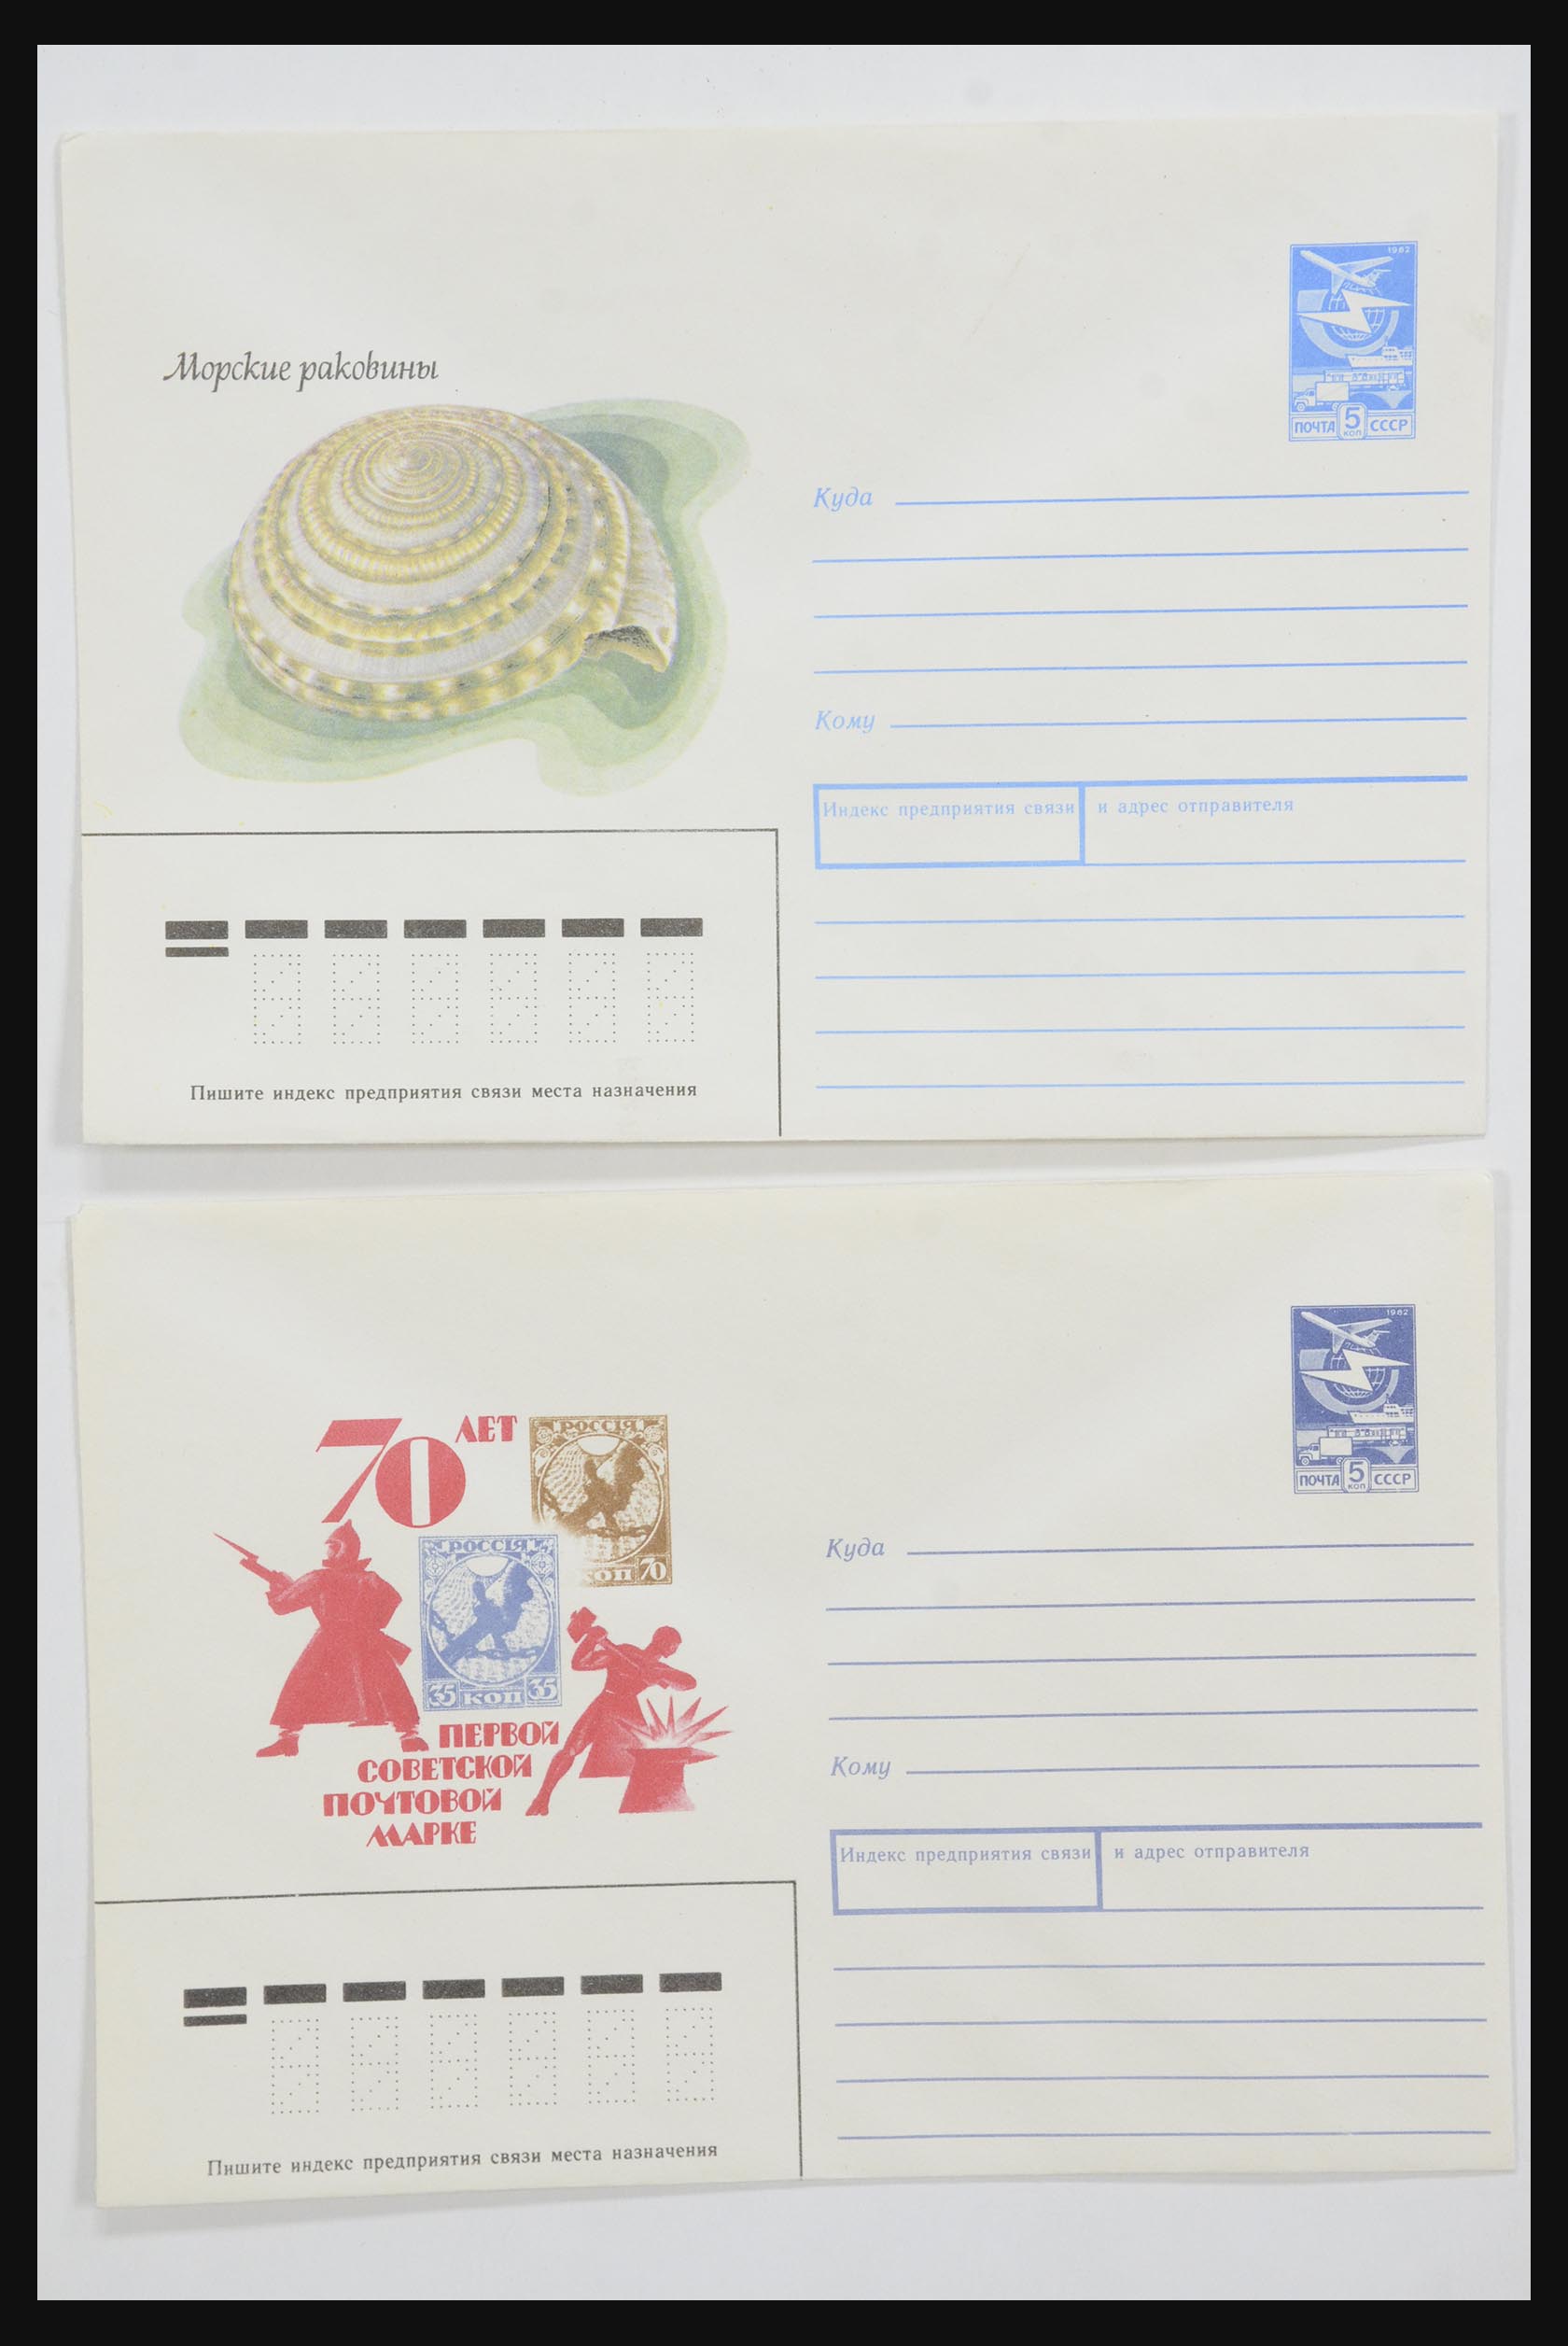 31928 0060 - 31928 Oost Europa brieven jaren 60/90.